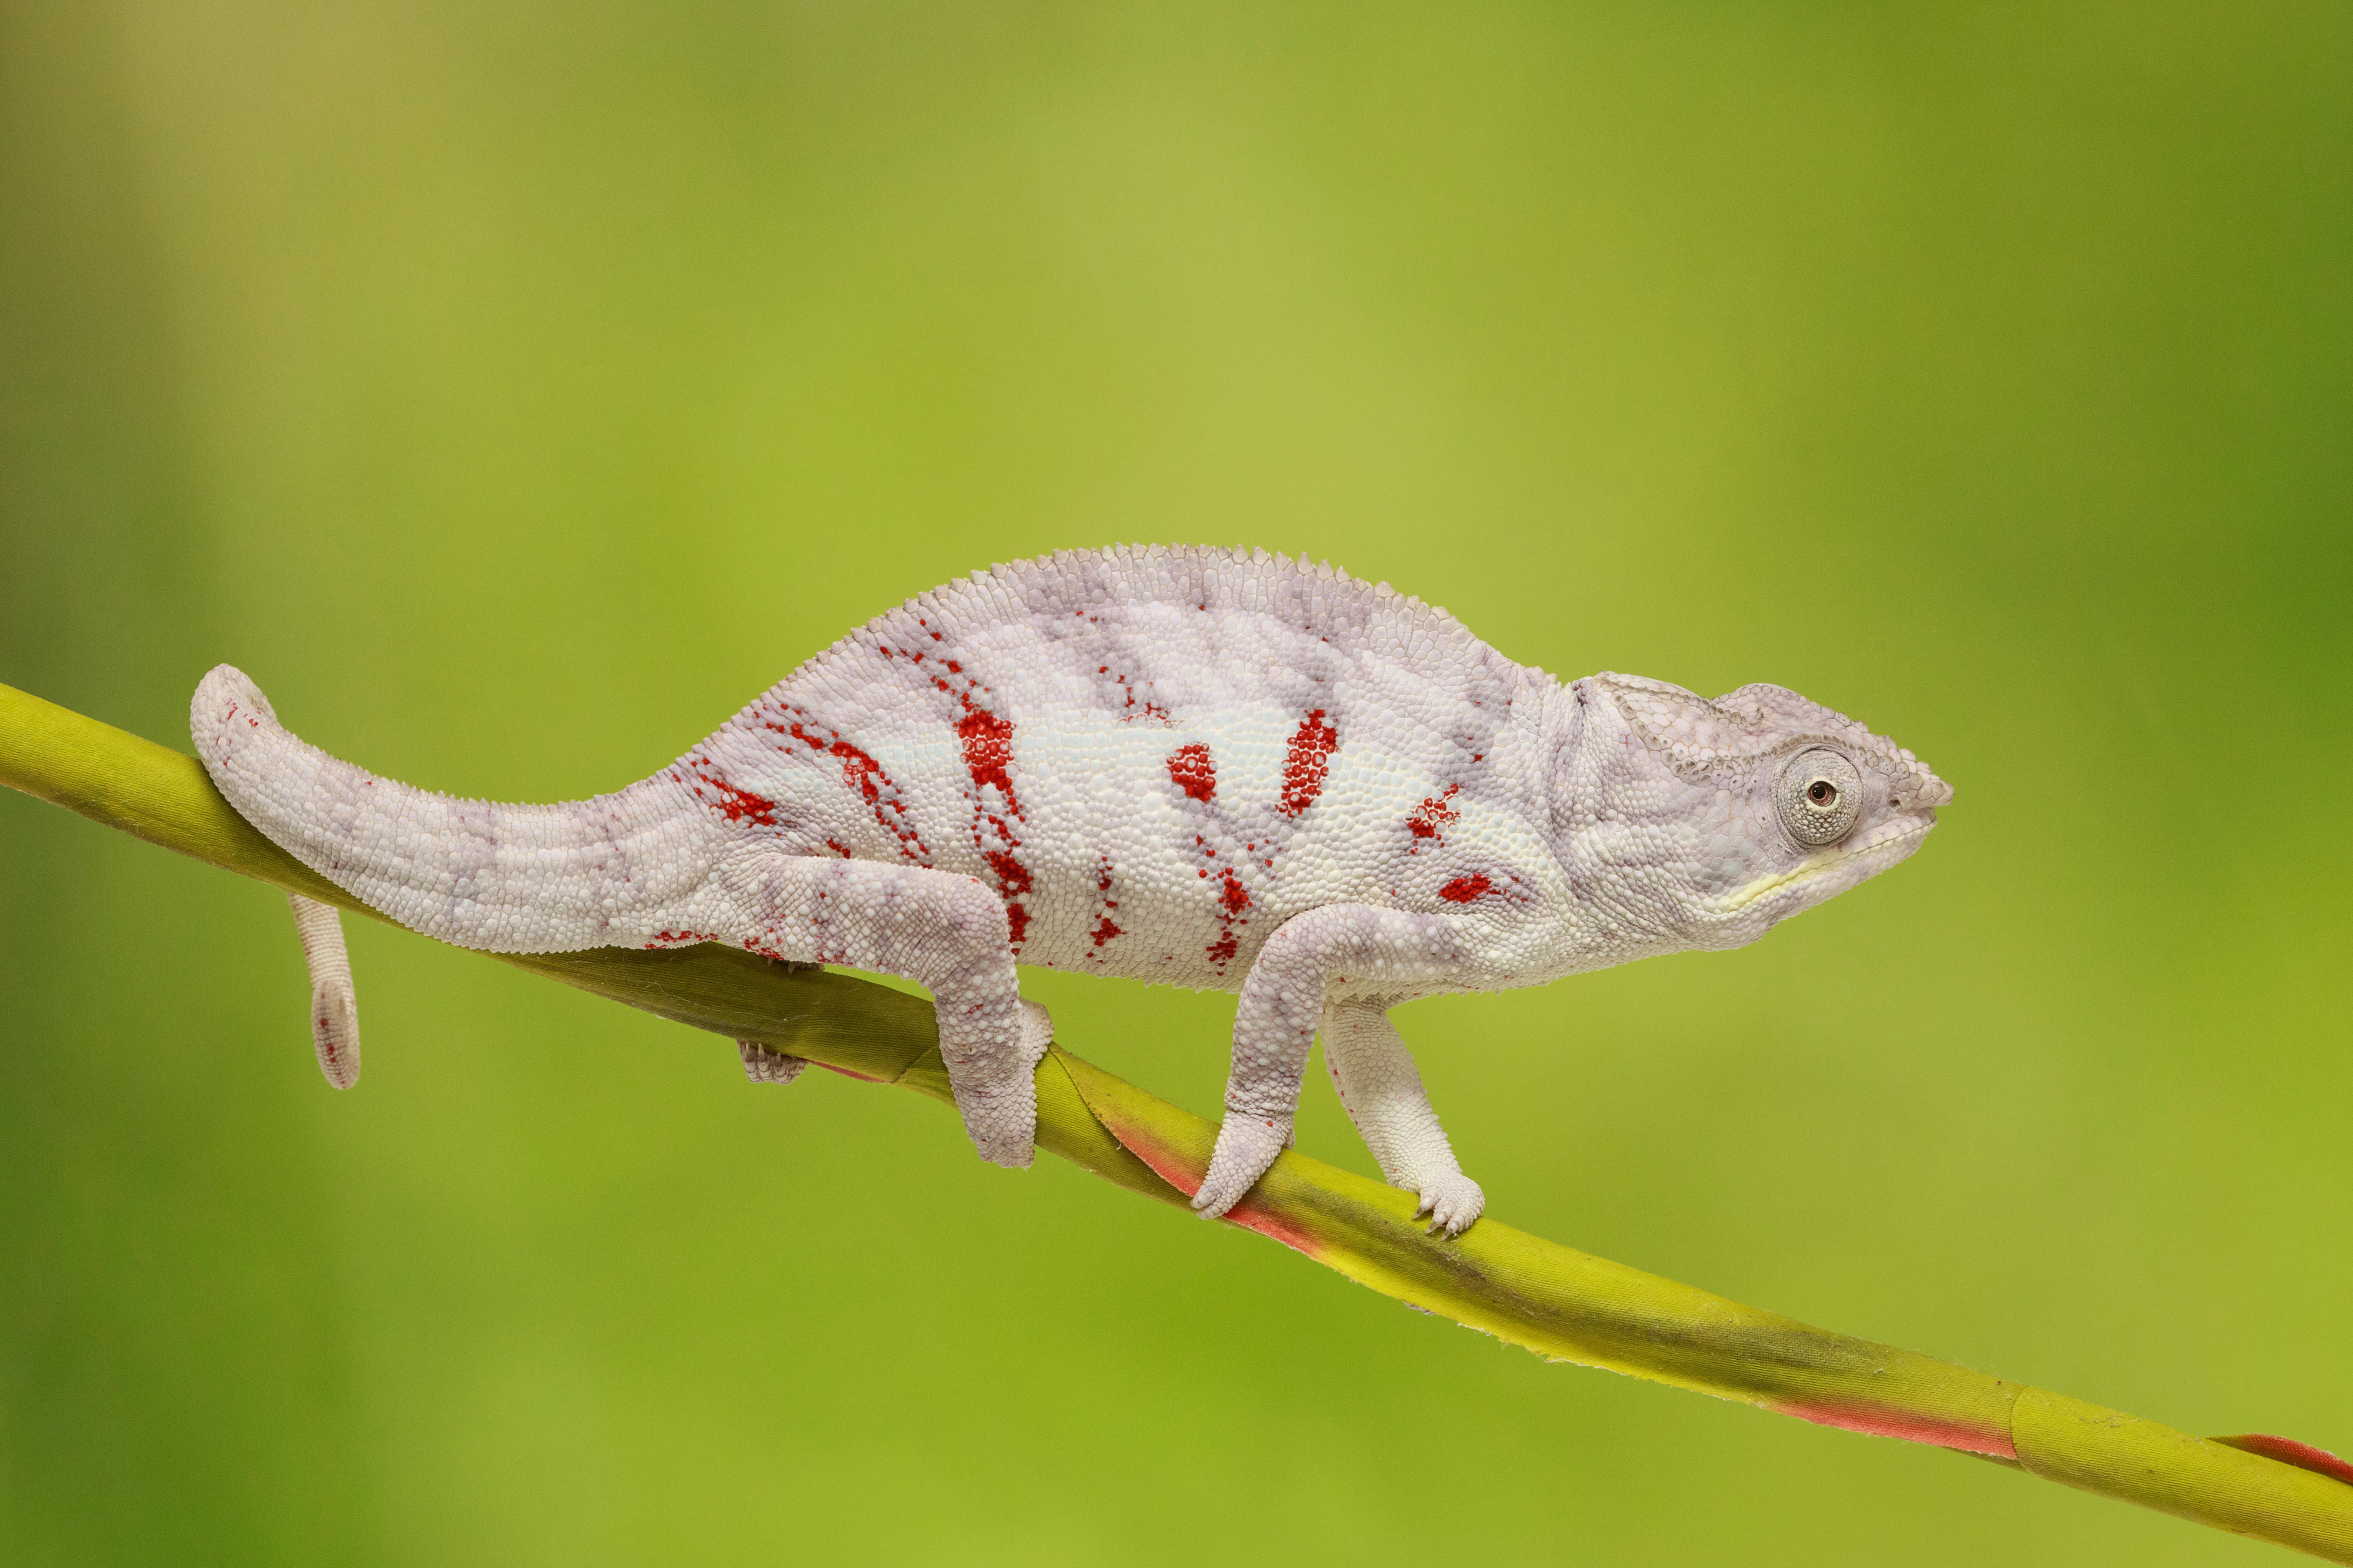 white and red chameleon on vine